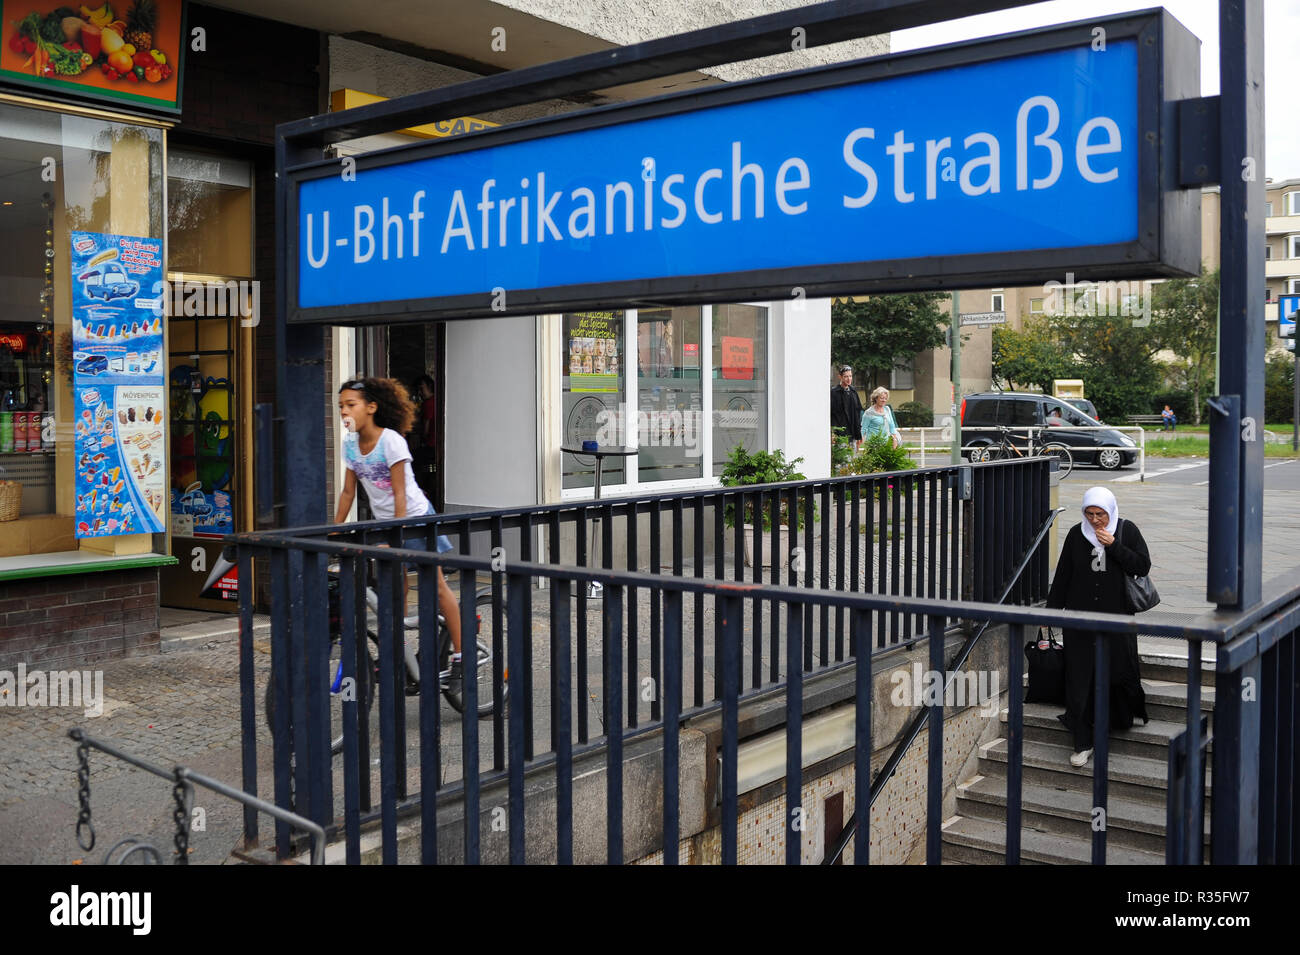 03.10.2011, Berlin, Allemagne, Europe - Entrée de la station de métro Afrikanische Strasse à Berlin-Wedding. Banque D'Images